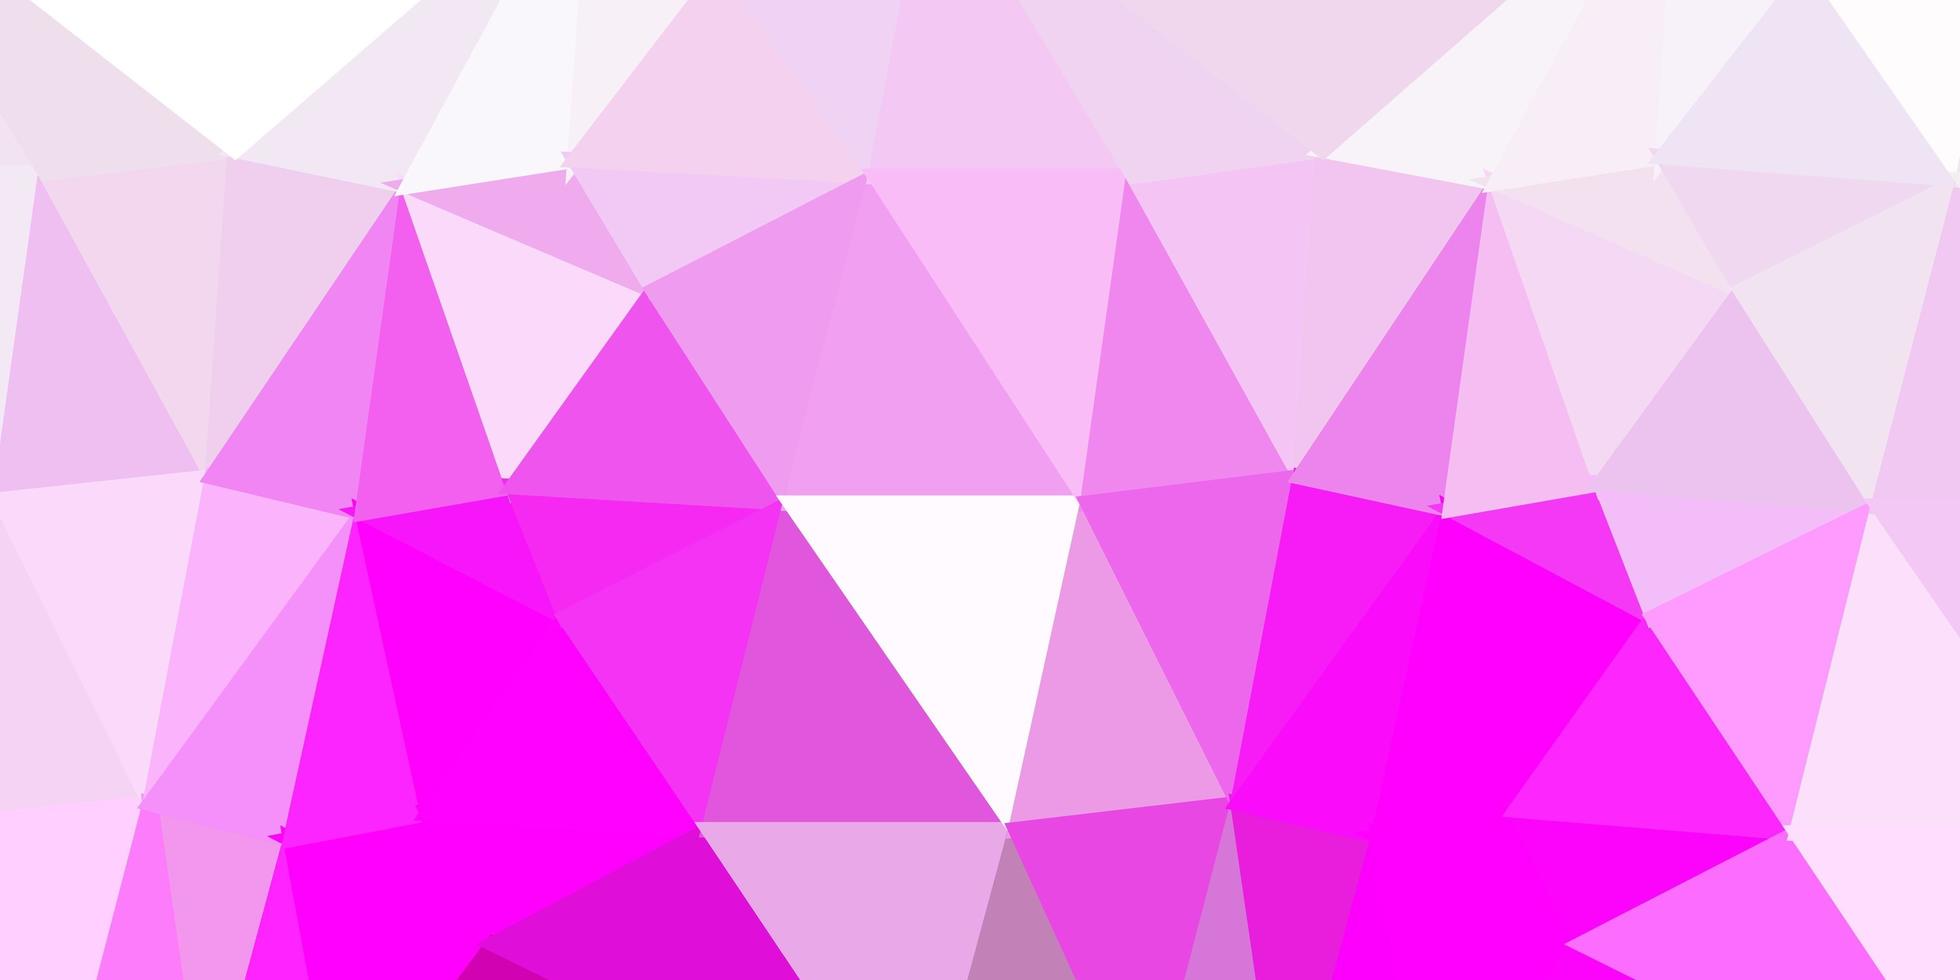 layout di triangolo poli vettoriale viola chiaro, rosa.